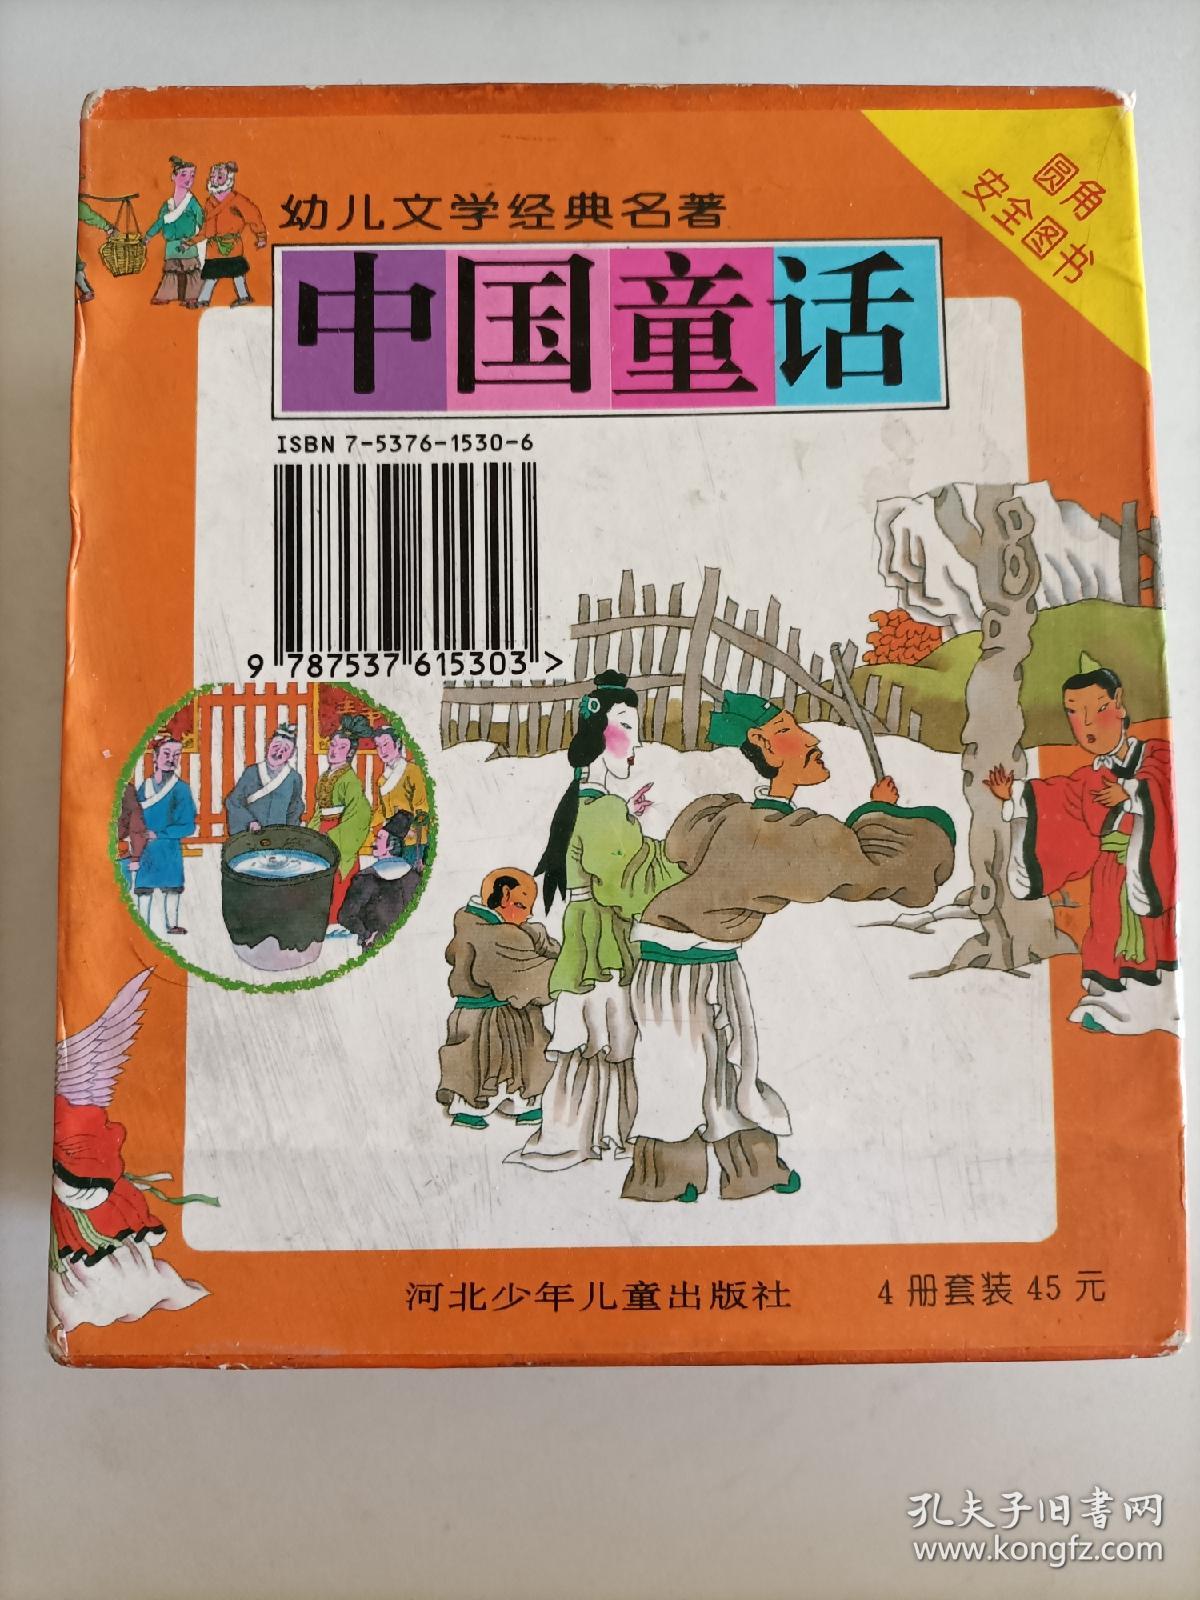 画说西游记(幼儿文学经典名著)精装全四册